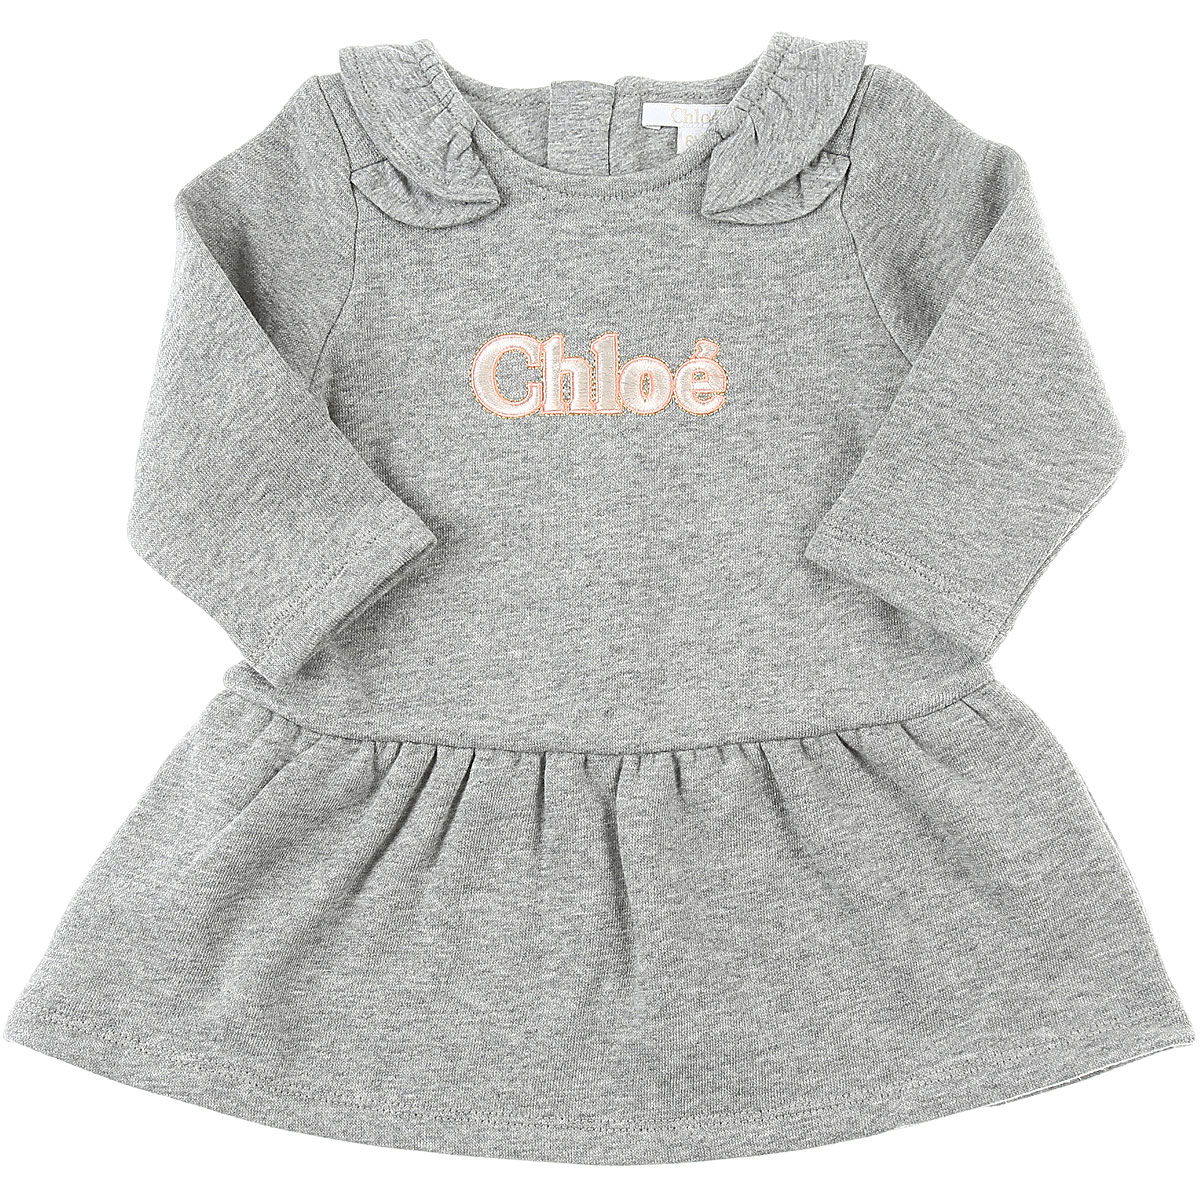 Chloe Baby Kleid für Mädchen Günstig im Sale, Grau, Baumwolle, 2017, 12M 2Y 3Y 6M 9M